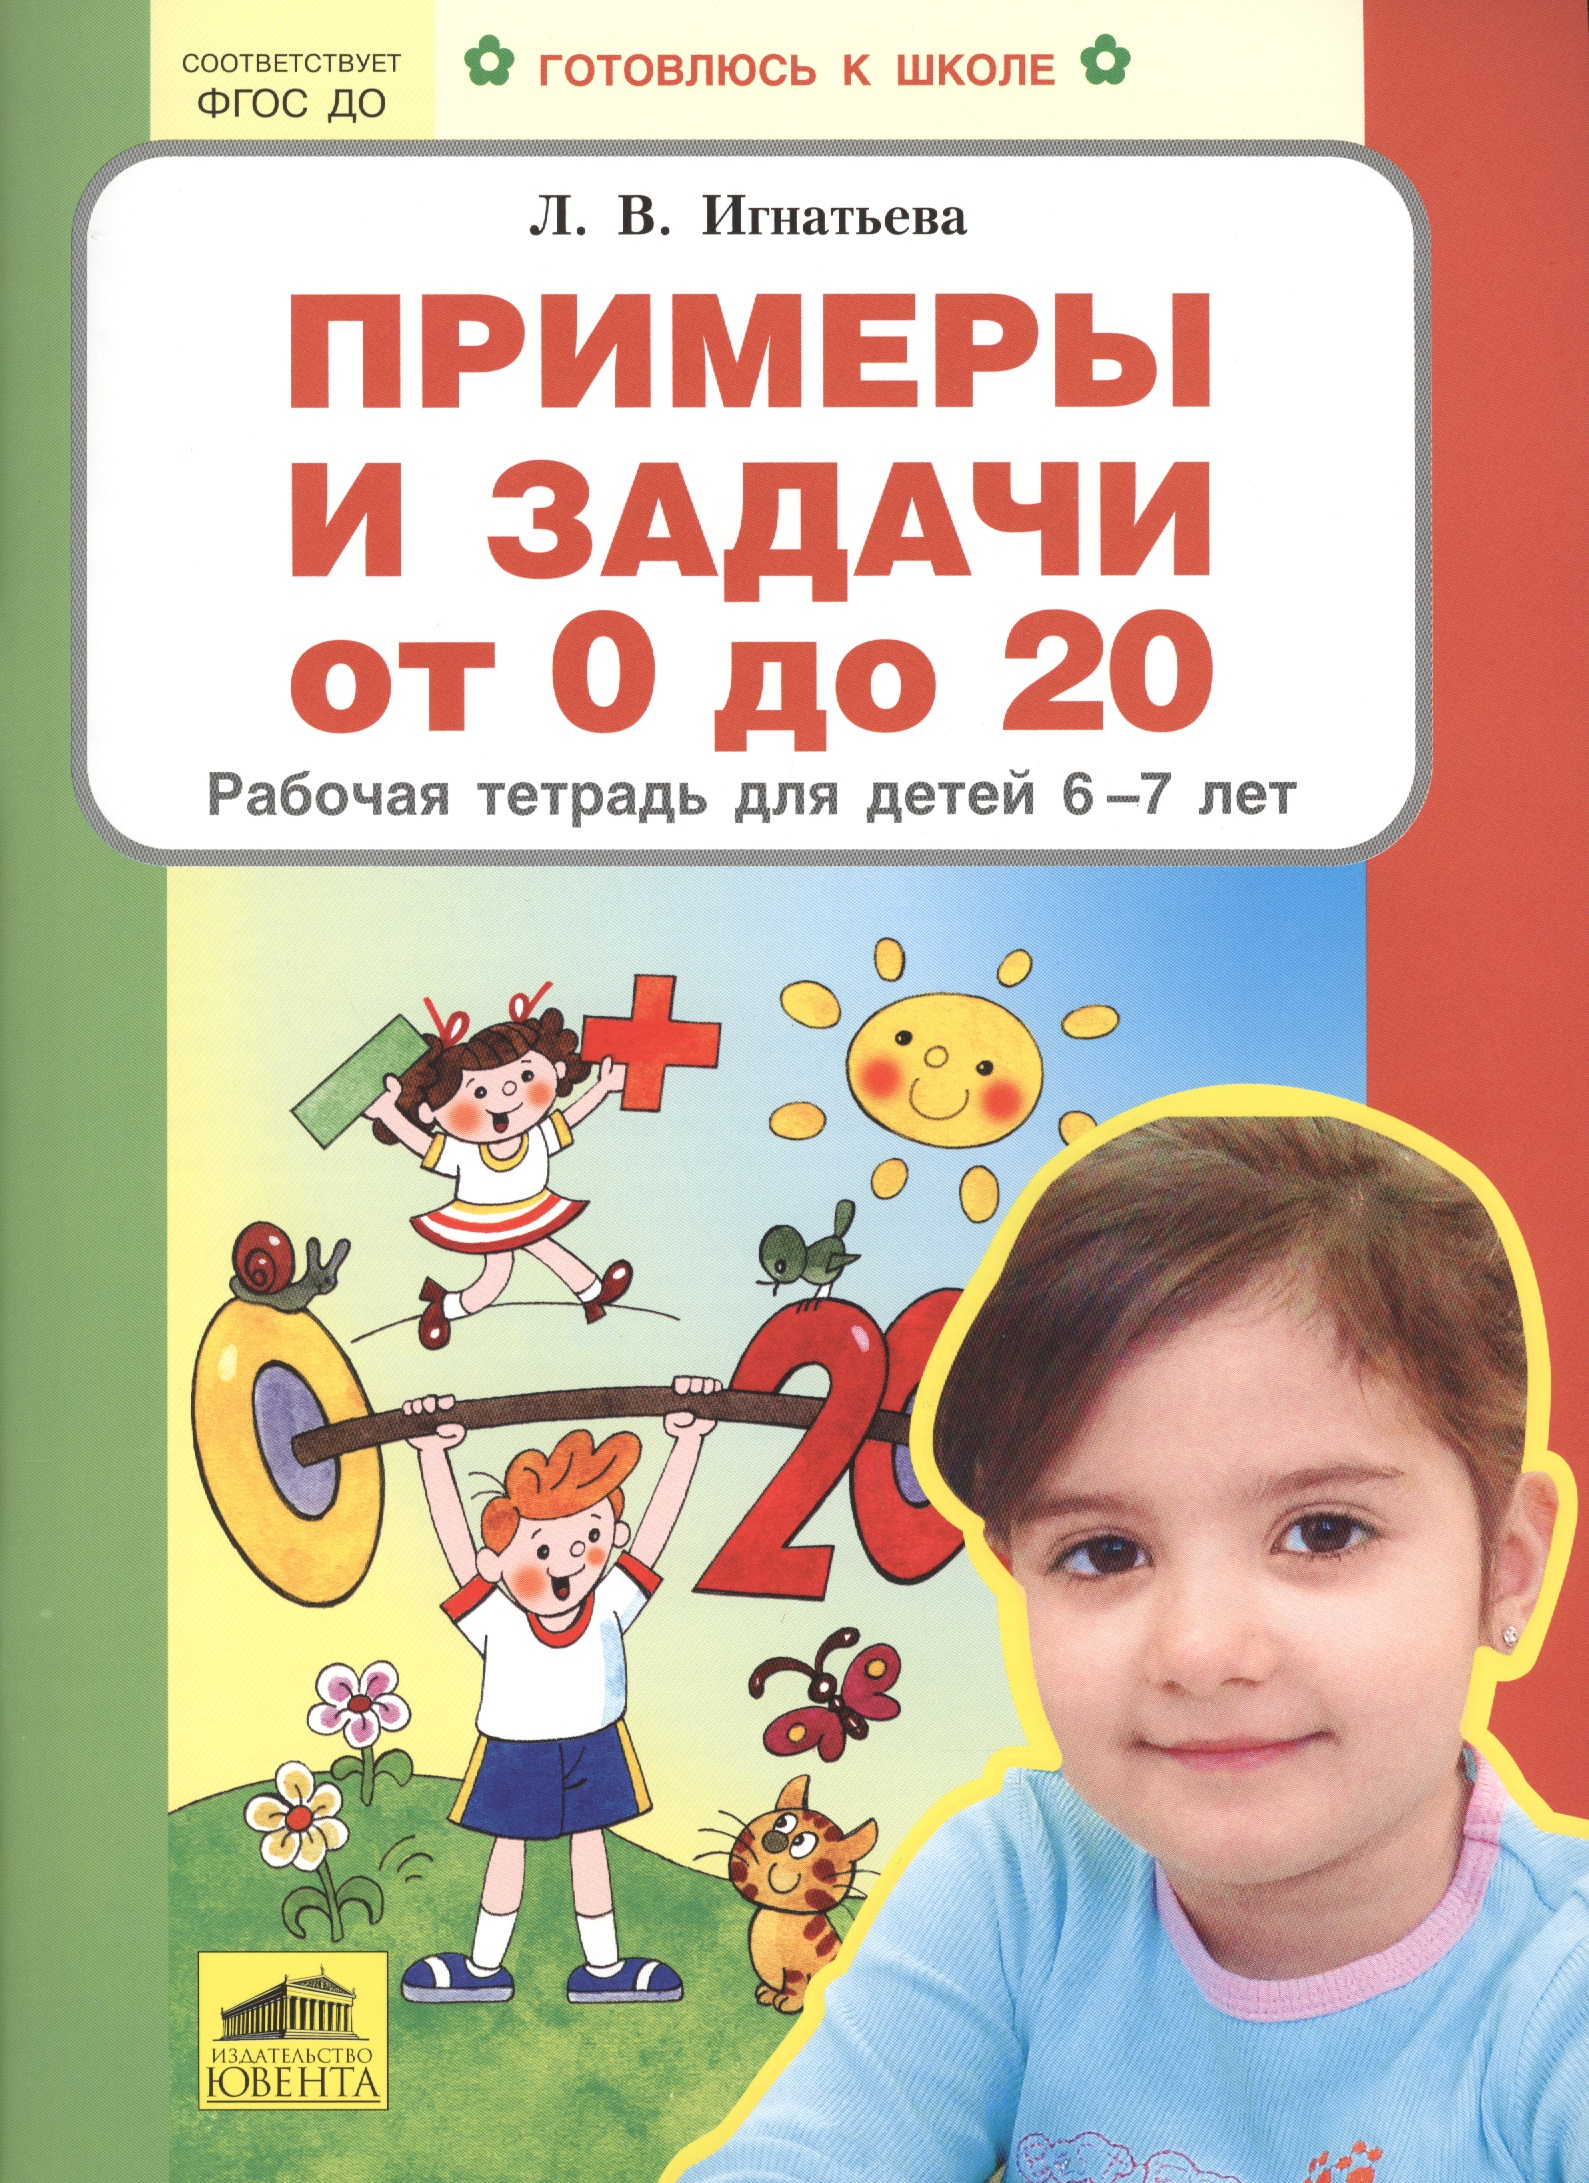 примеры от 0 до 20 Примеры и задачи от 0 до 20 Р/т для детей (6-7) (мГкШ) Игнатьева (ФГОС ДО)